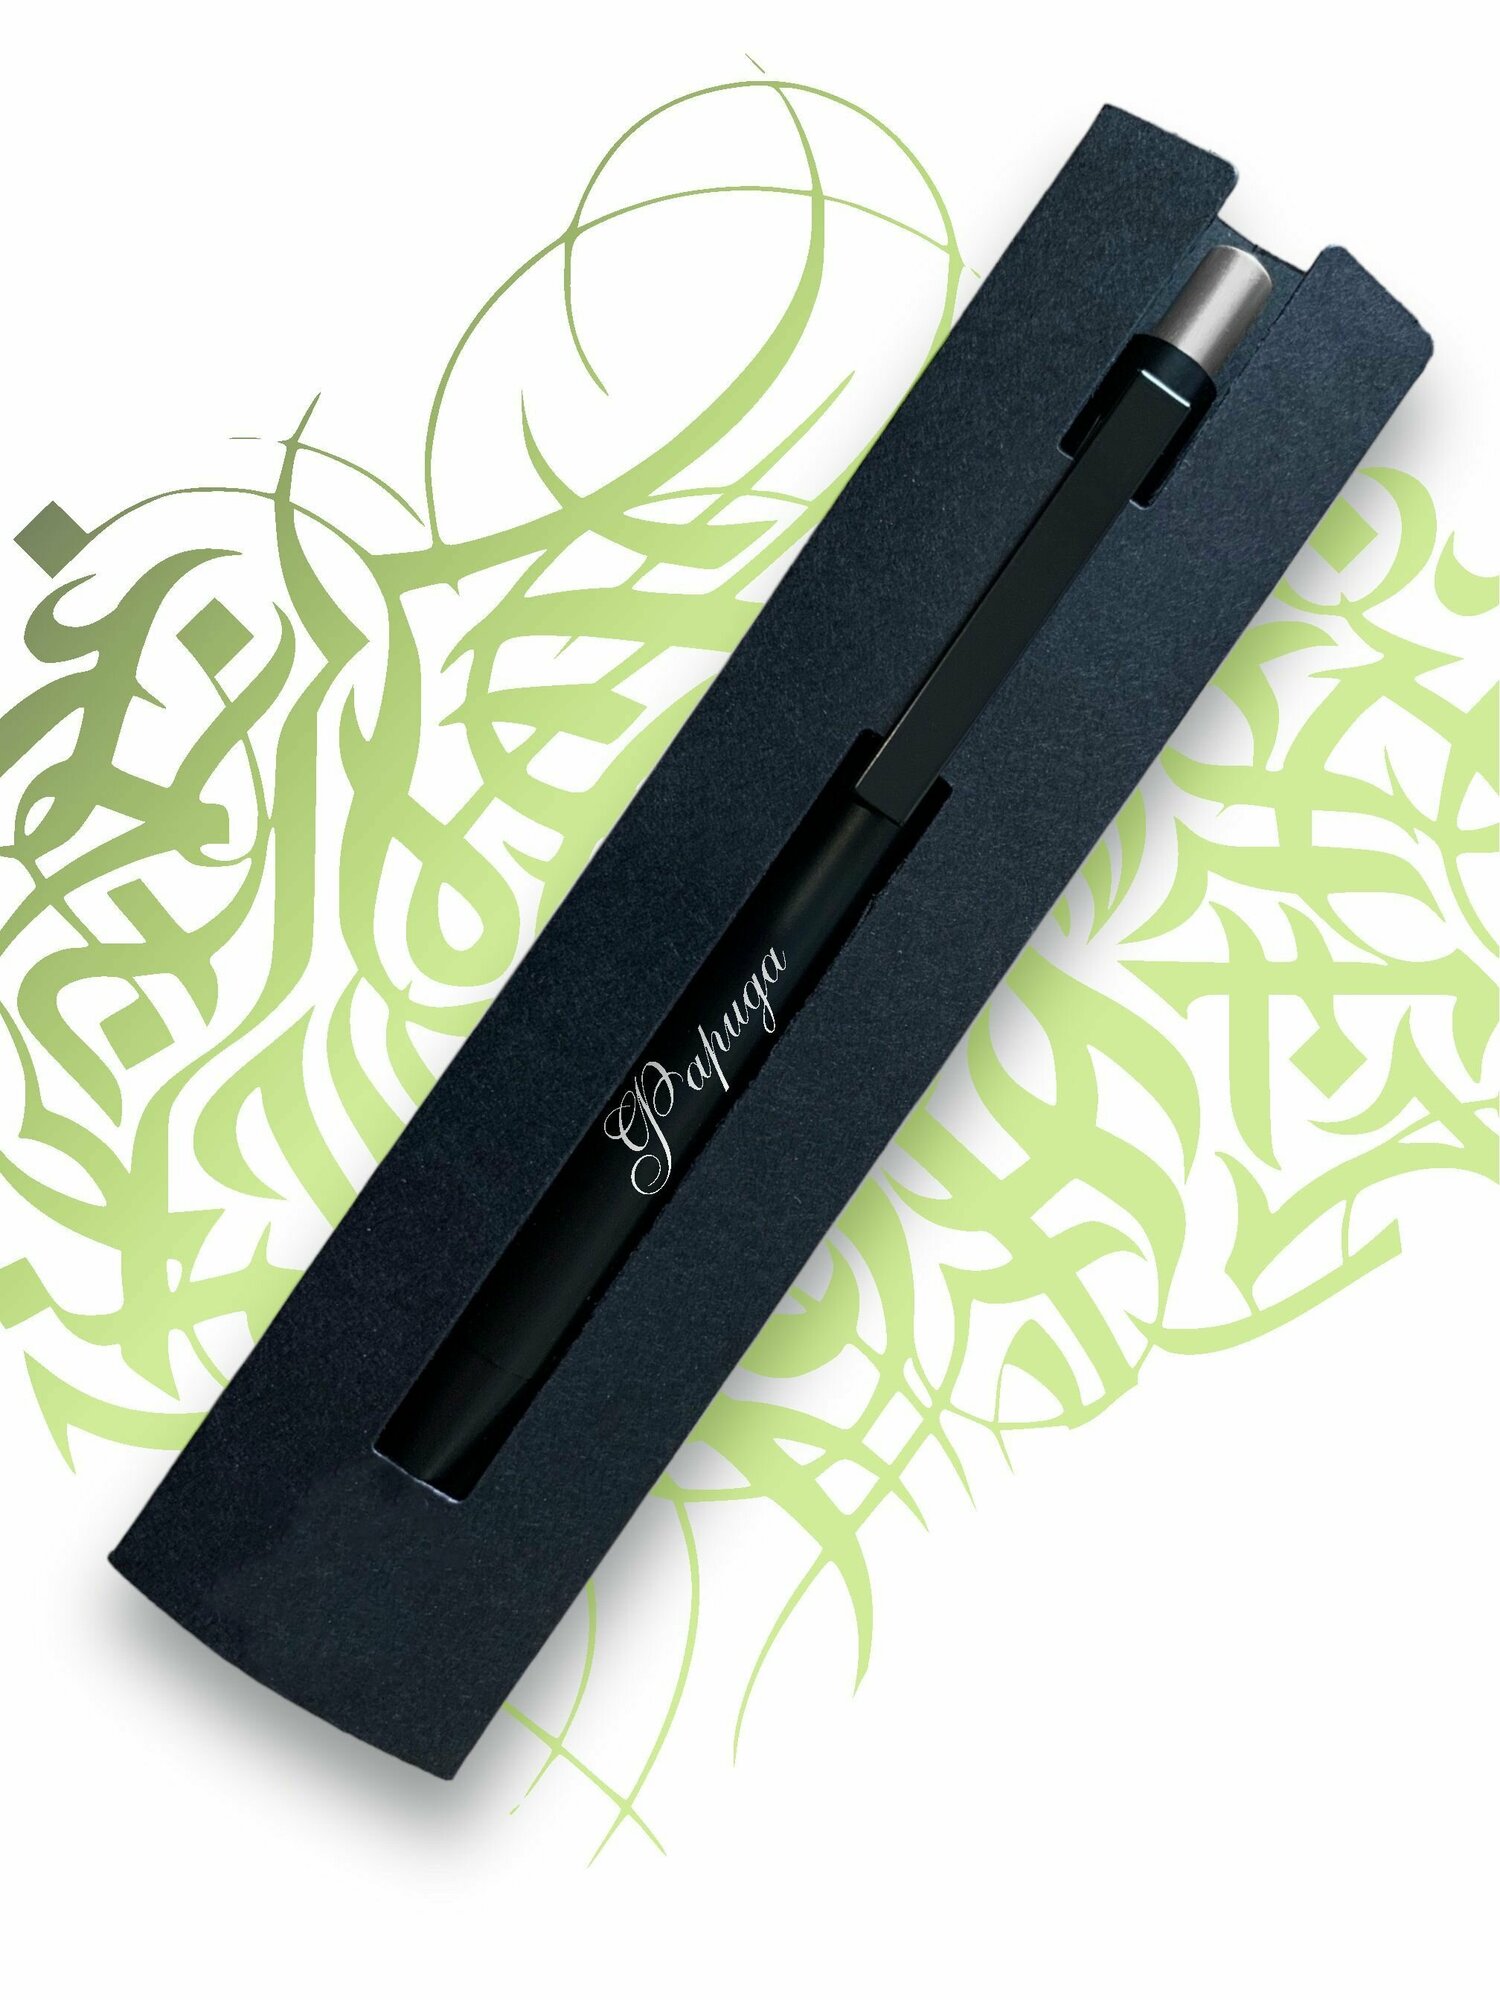 Именная ручка с гравировкой " Фарида "